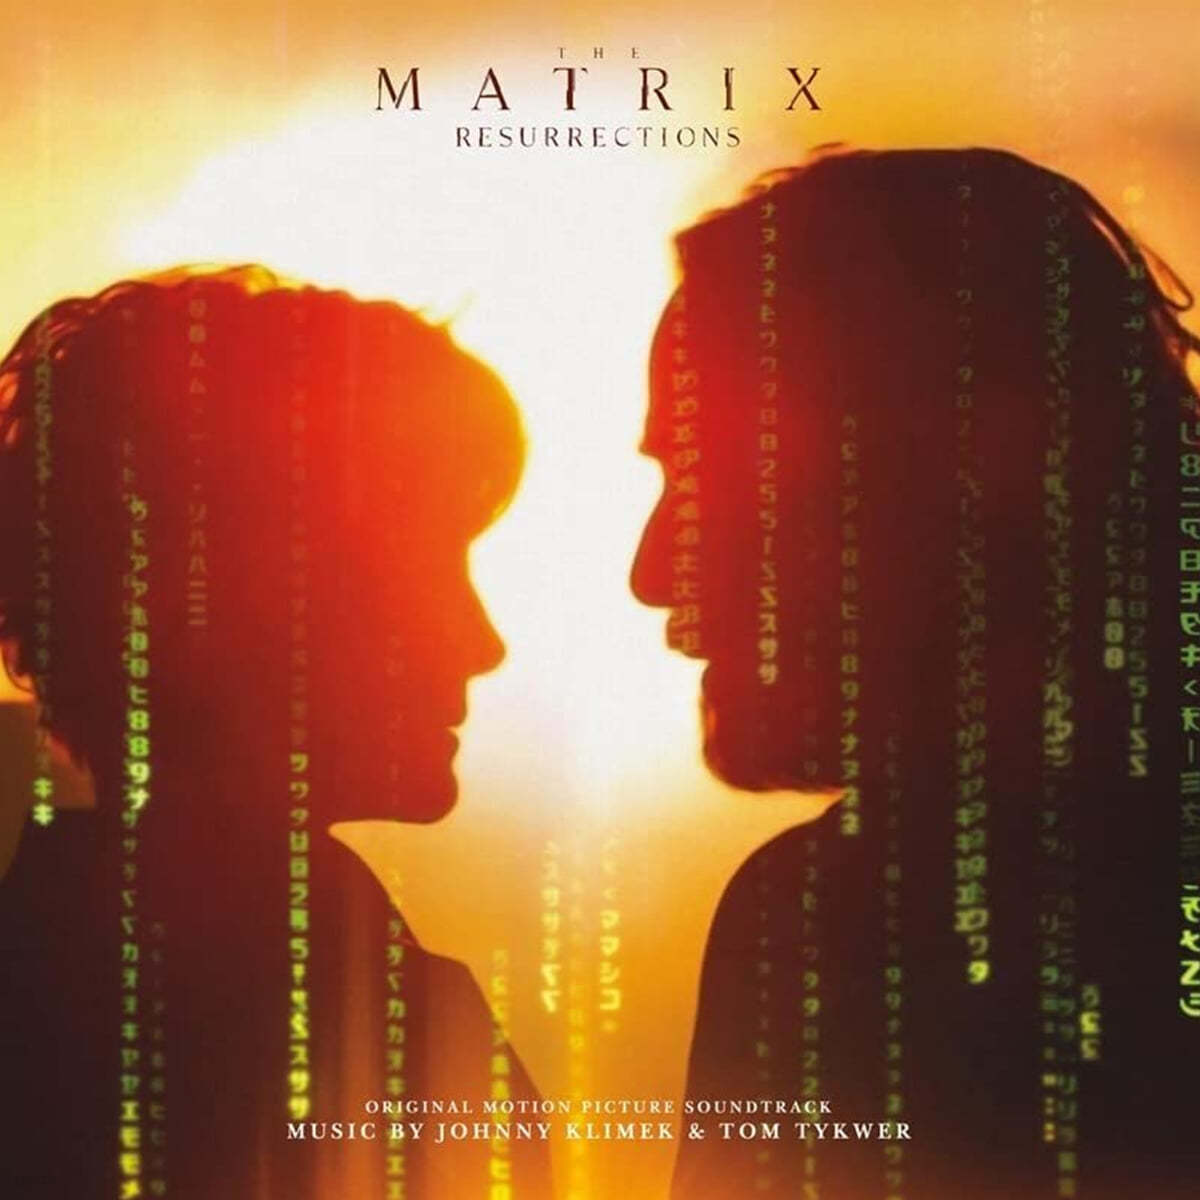 매트릭스: 리저렉션 영화음악 (Matrix Resurrections OST) [2LP] 